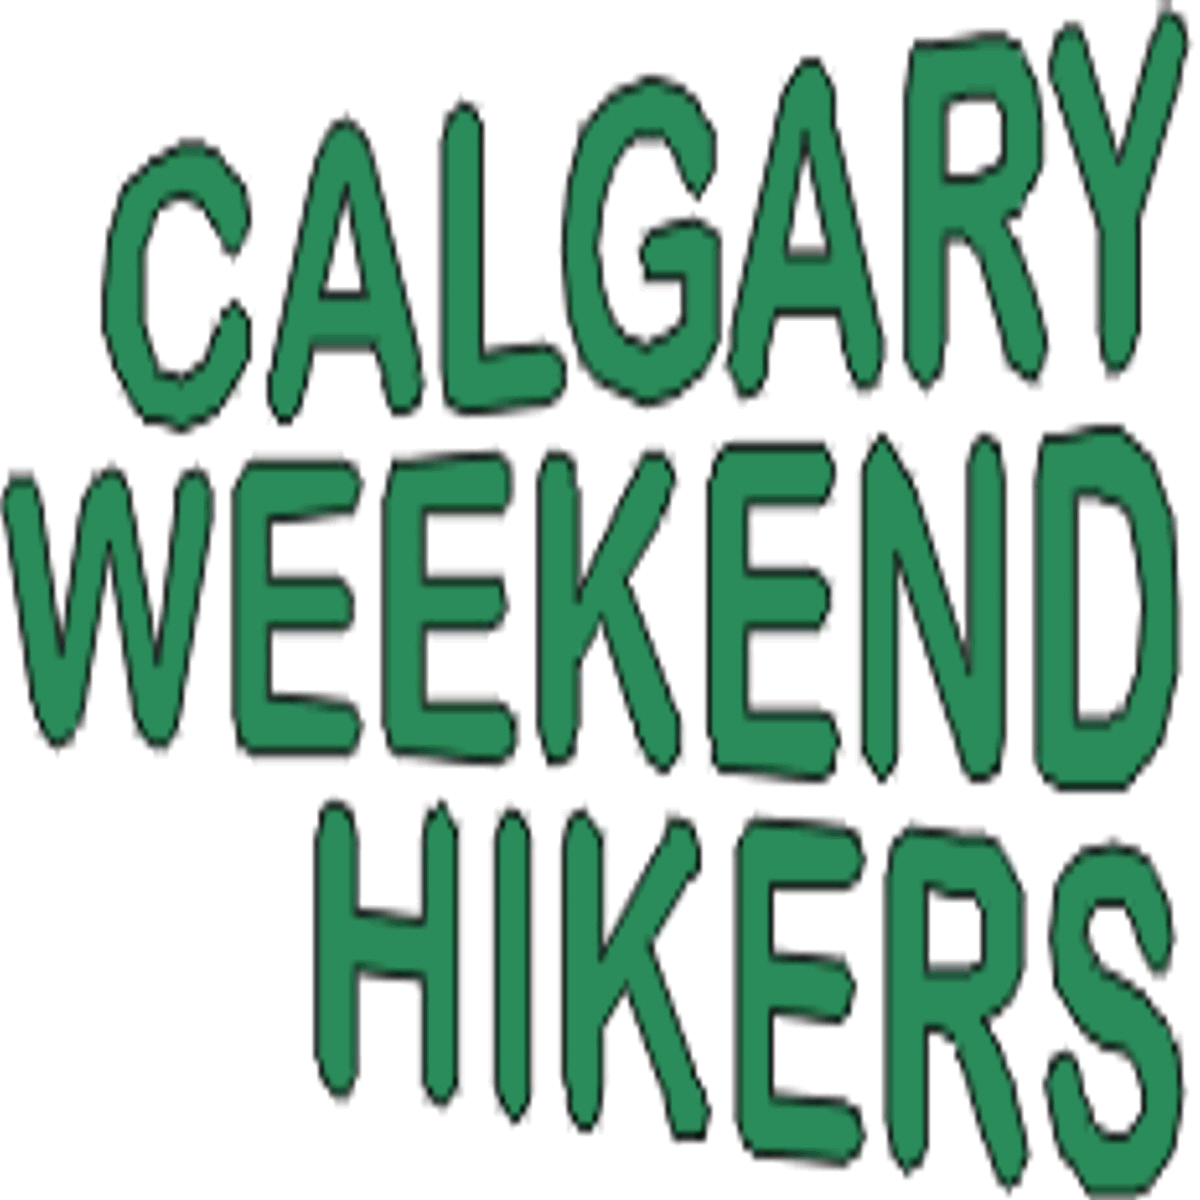 Calgary Weekend Hikers Membership Login